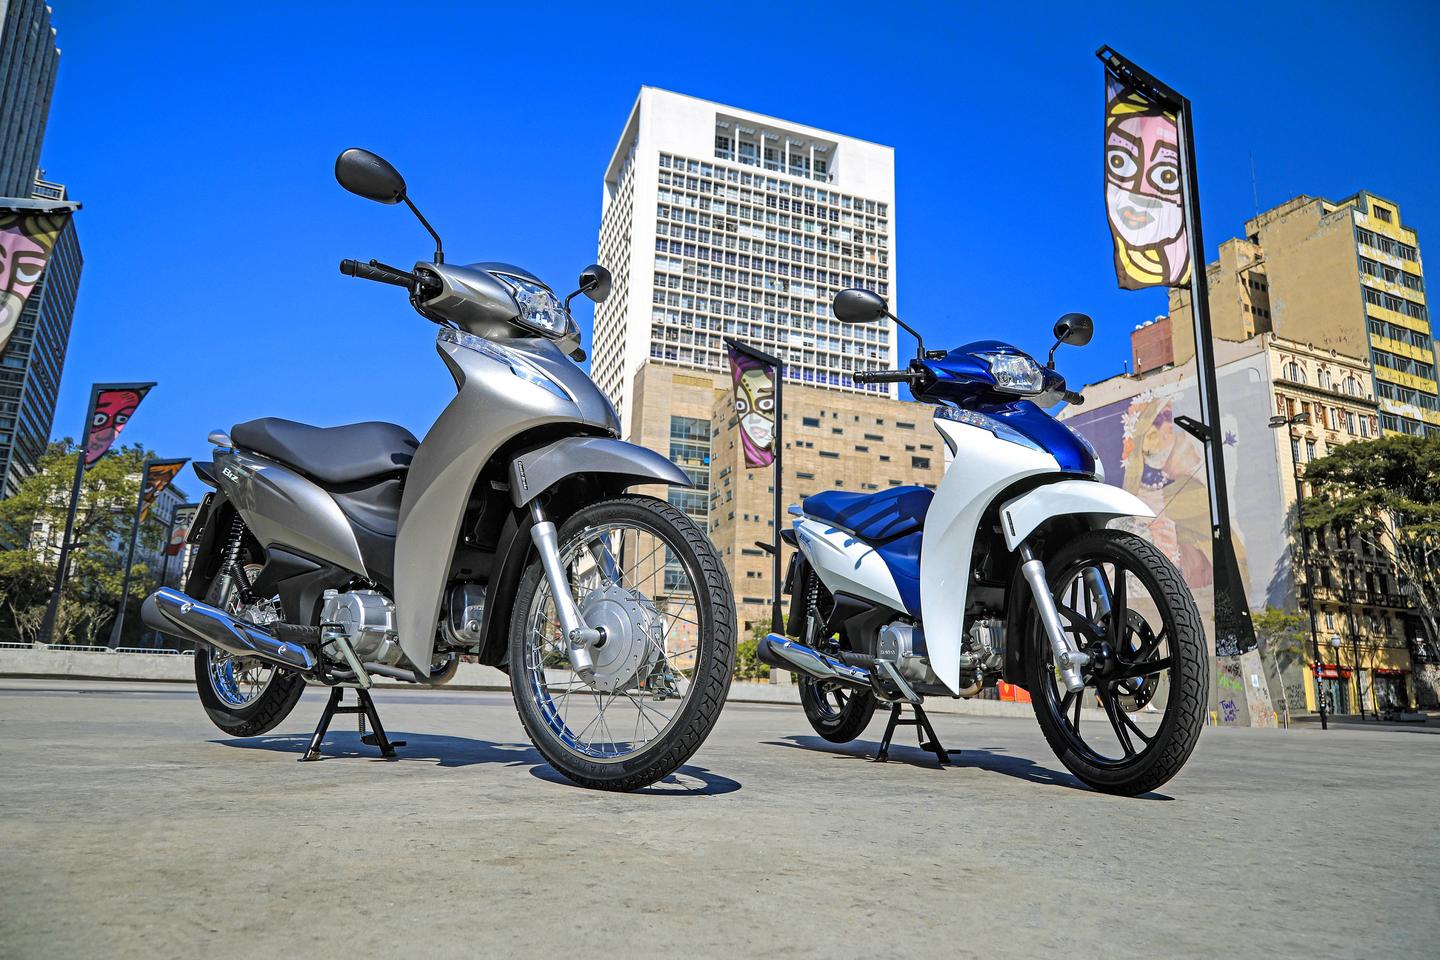 Honda comemora 25 anos da Biz, uma de suas motocicletas mais icônicas 